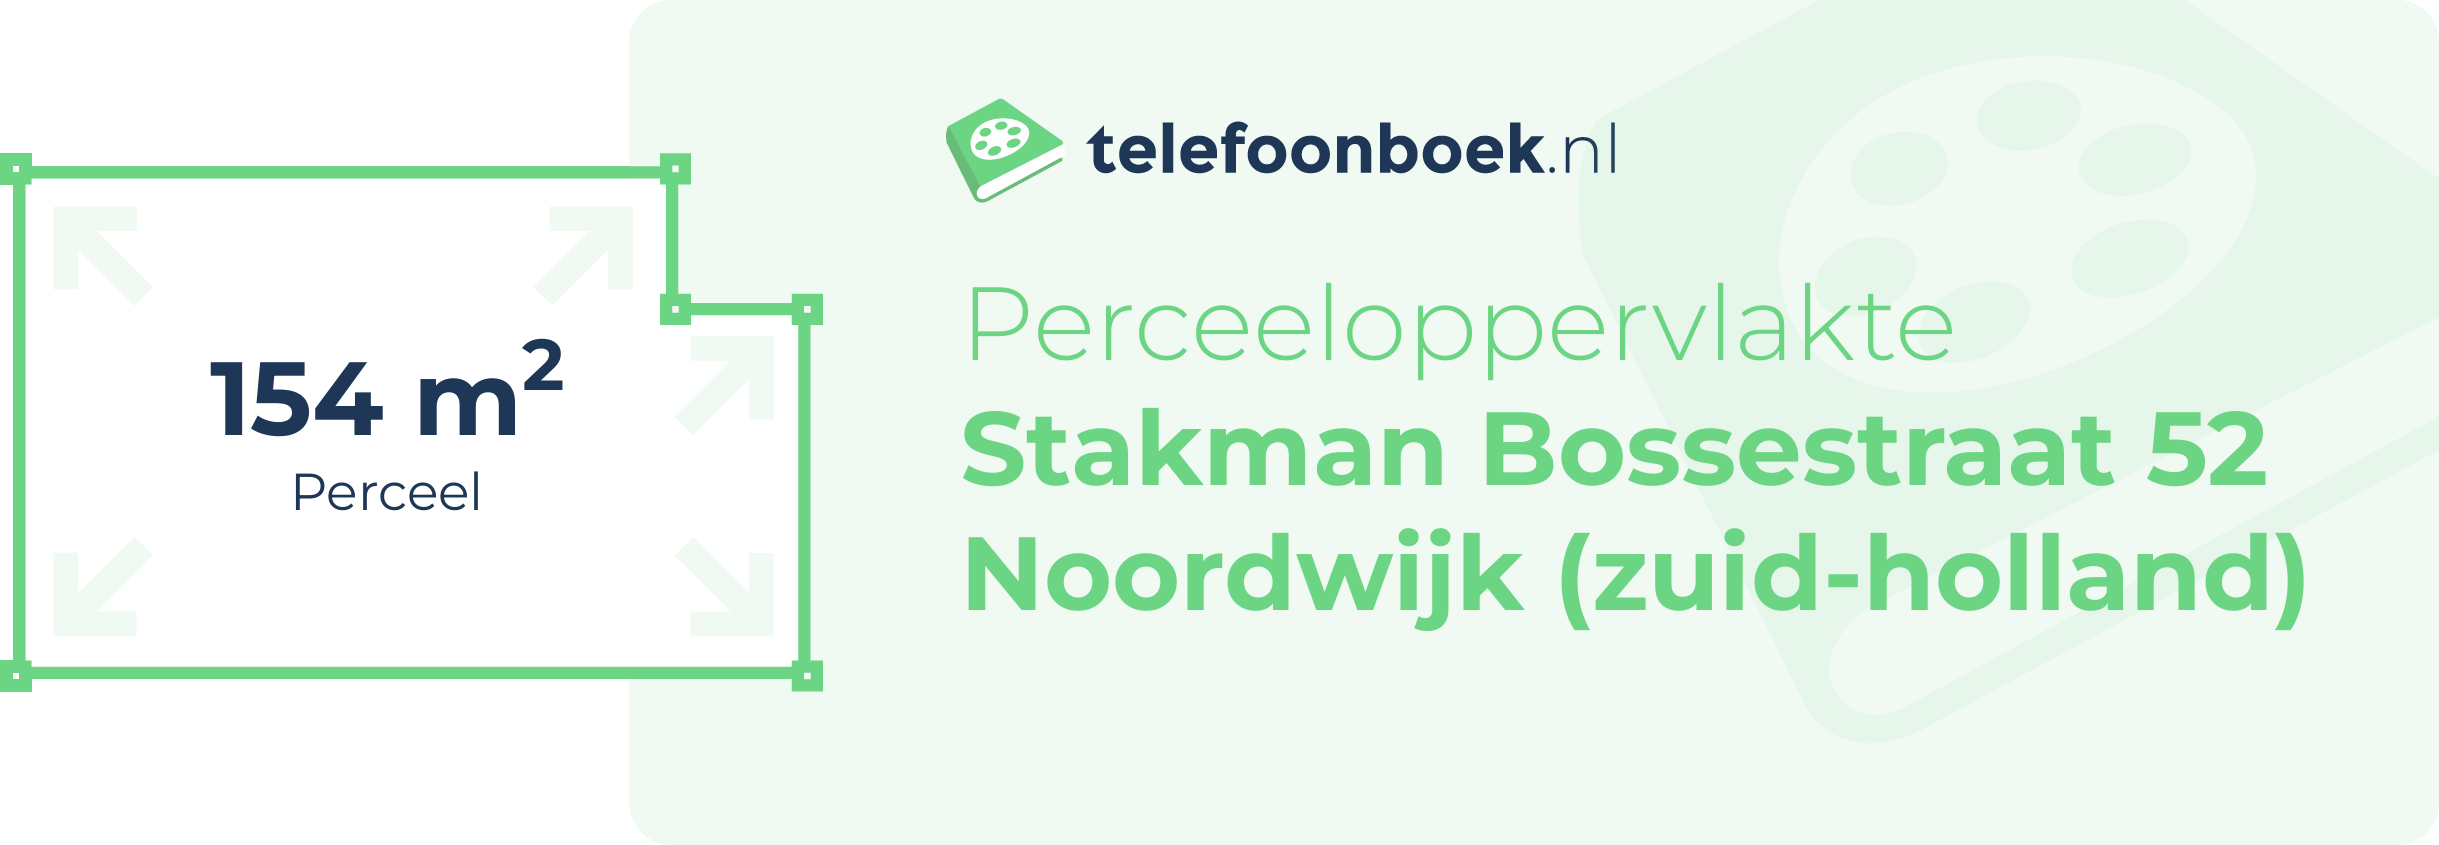 Perceeloppervlakte Stakman Bossestraat 52 Noordwijk (Zuid-Holland)